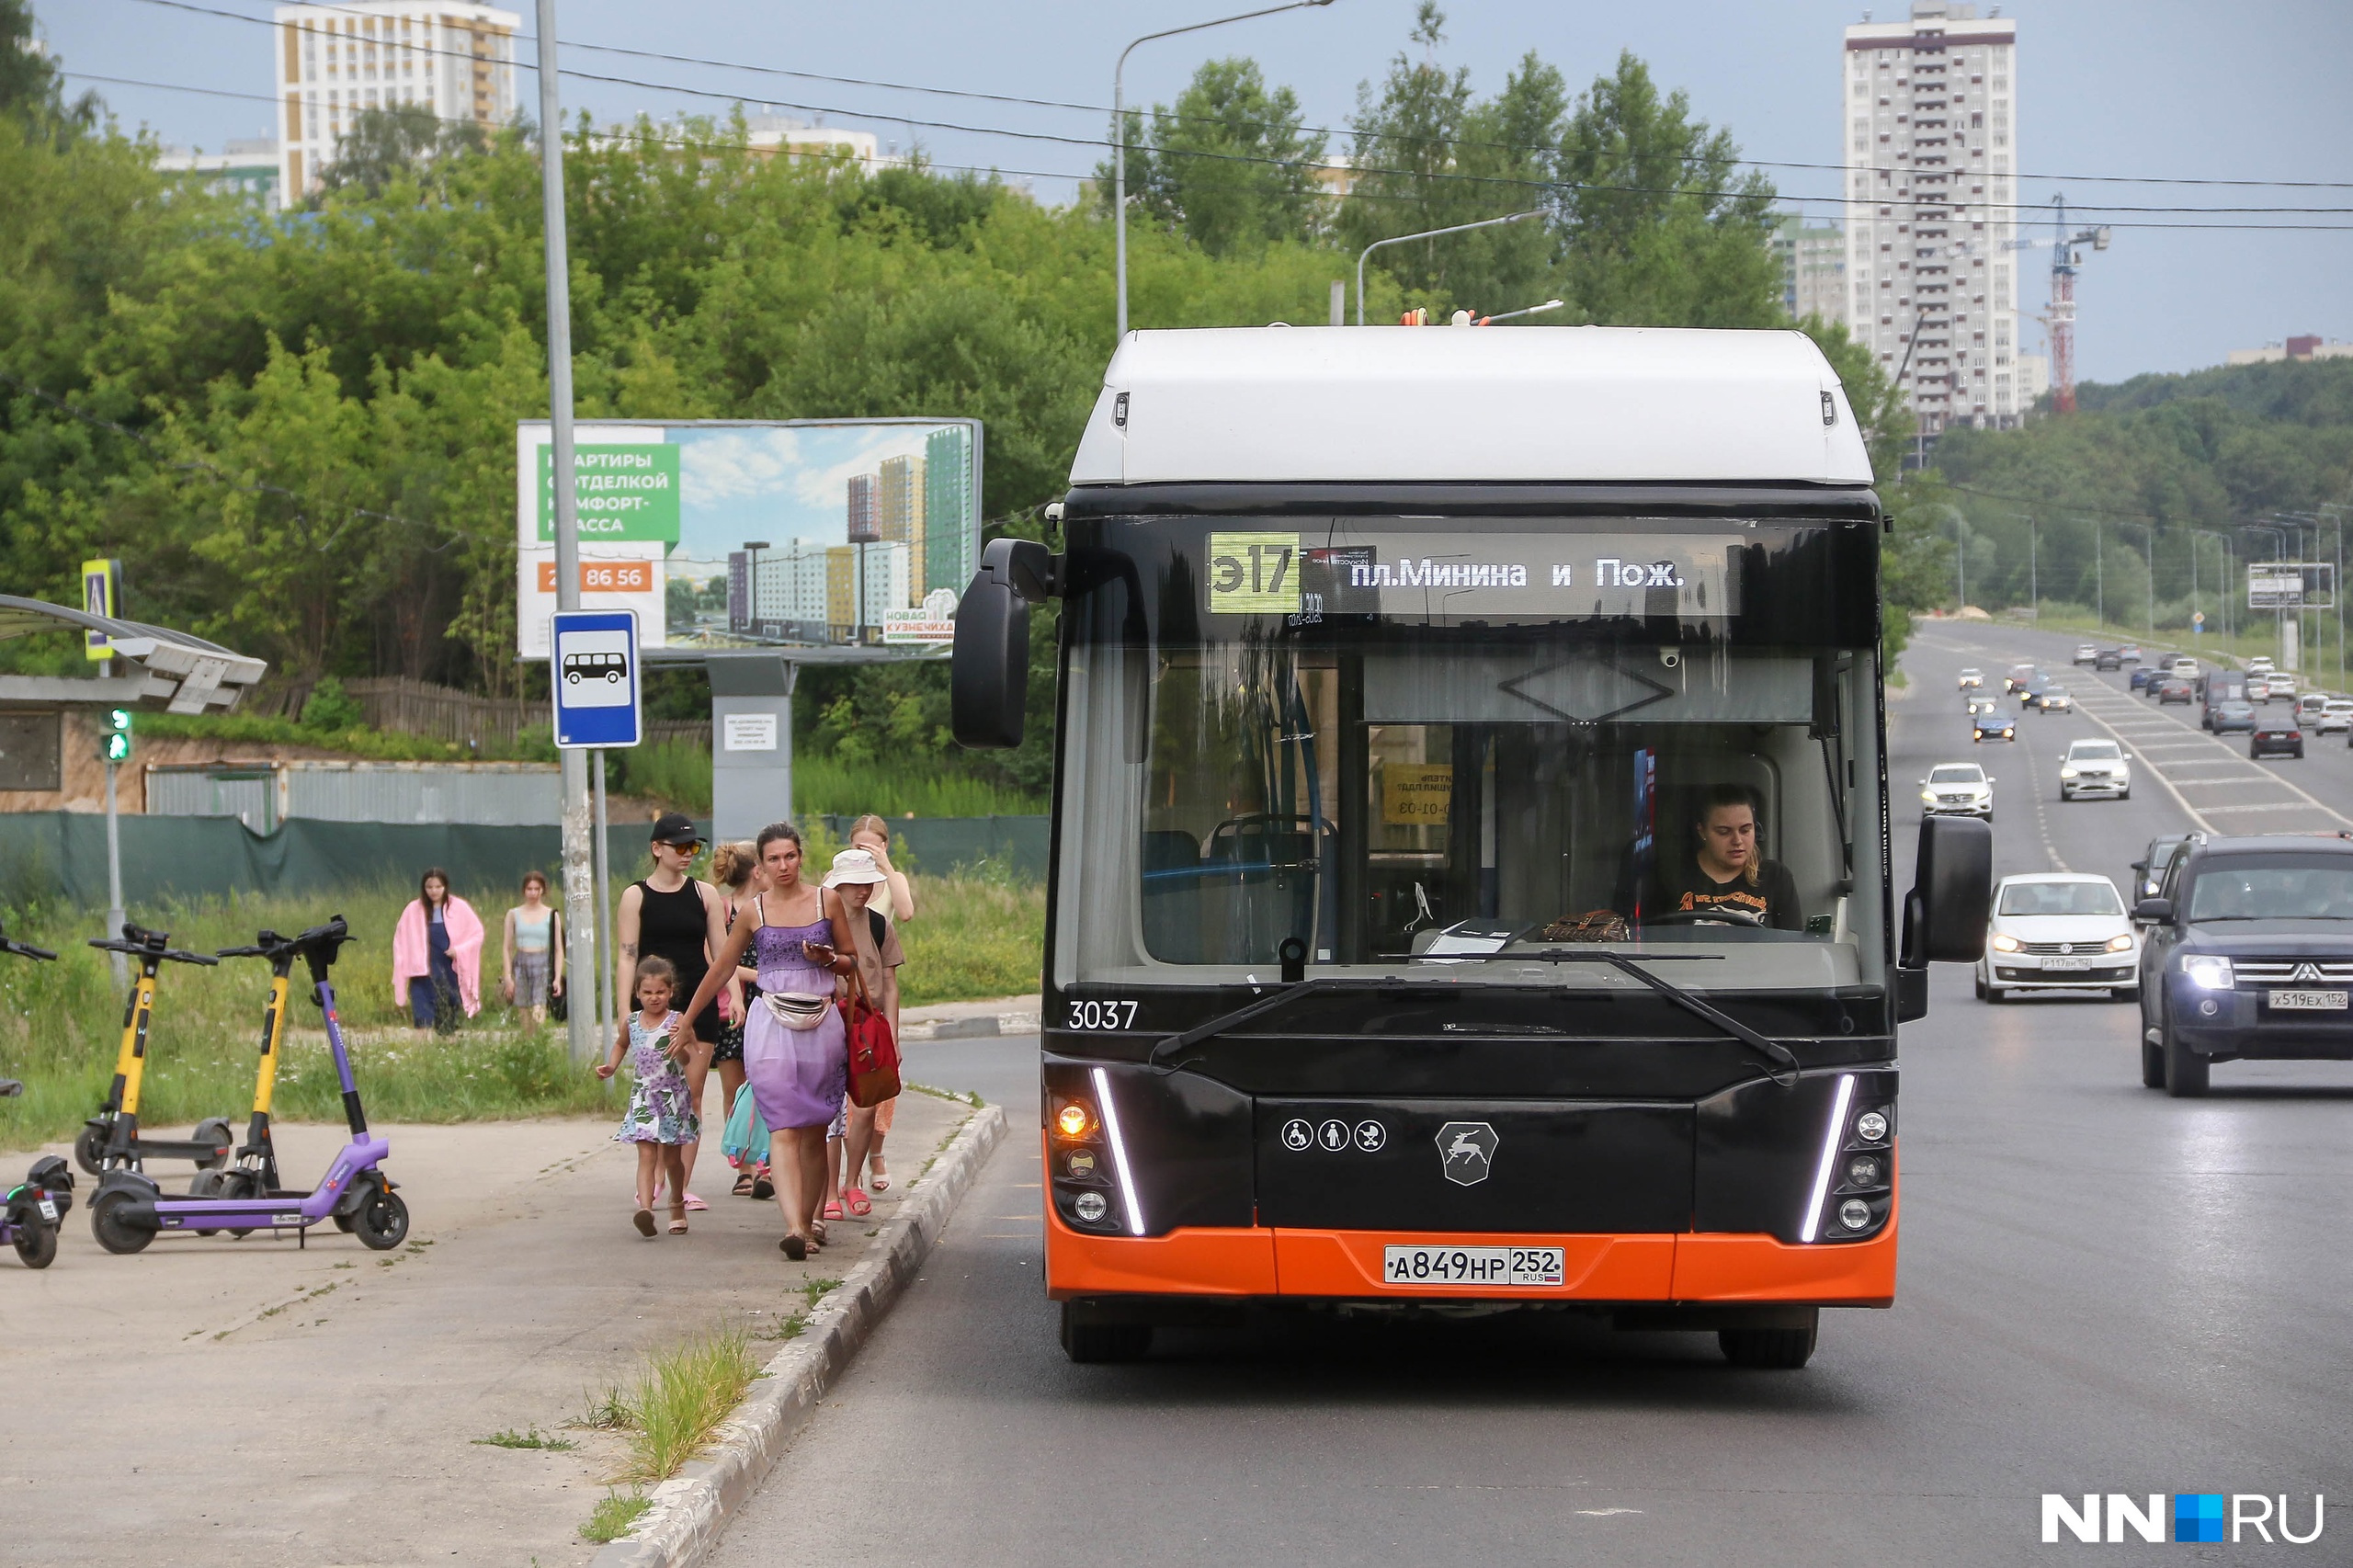 «Рискуют упасть и сломать себе что-нибудь». Что пассажиры думают о давке и жаре в автобусах Нижнего Новгорода